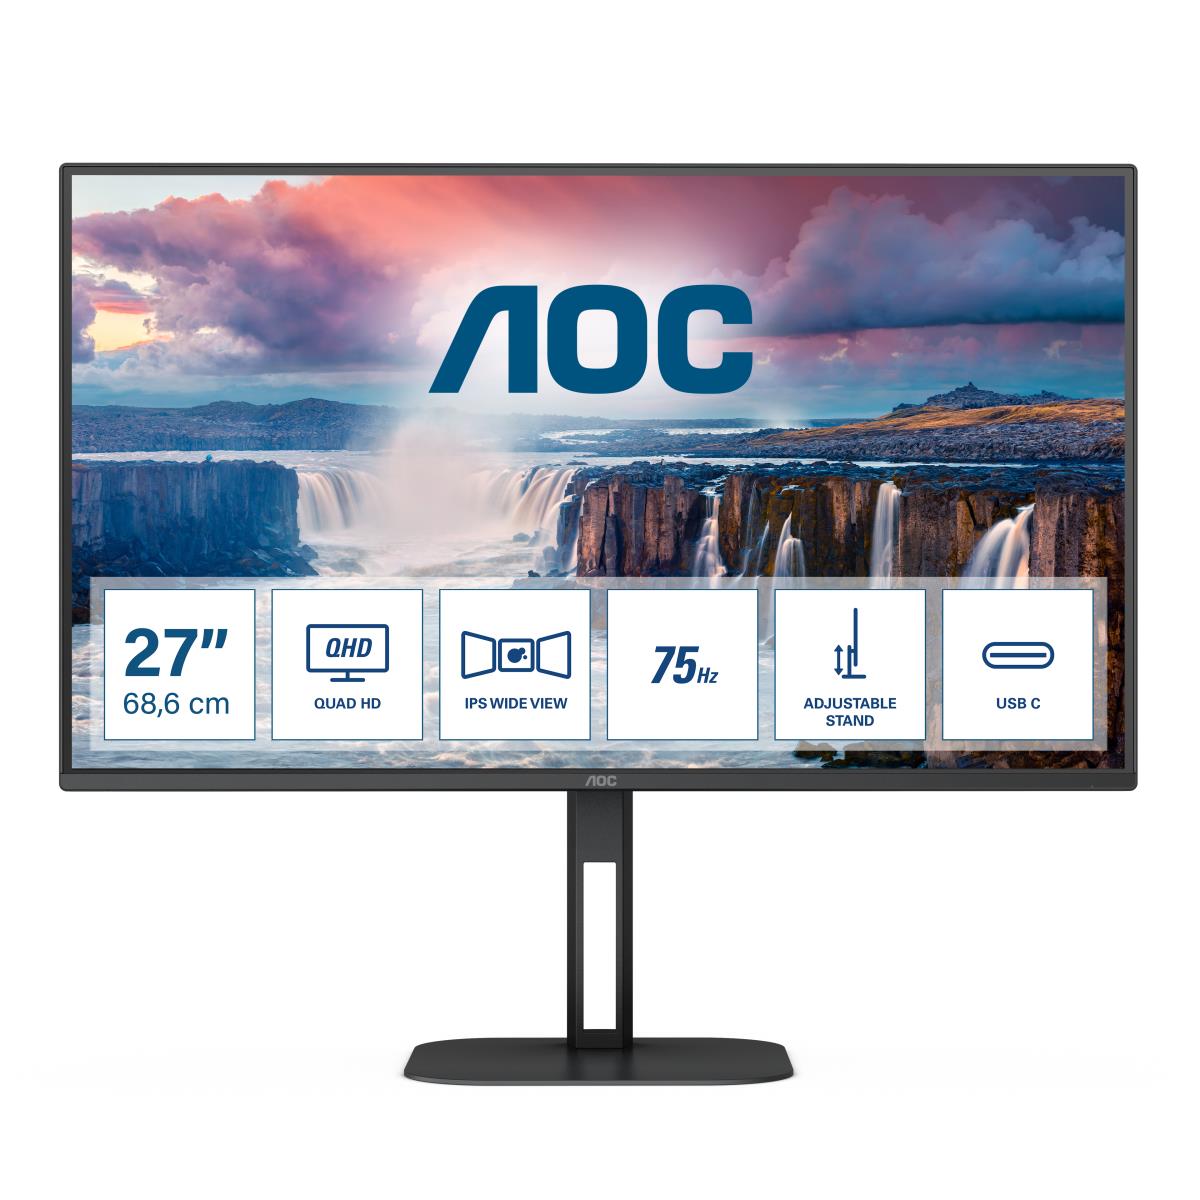 AOC Desktop USB-C Monitor - BK (QHD) - - 27in IPS -Q27V5C/BK Q27V5C/ -2560x1440